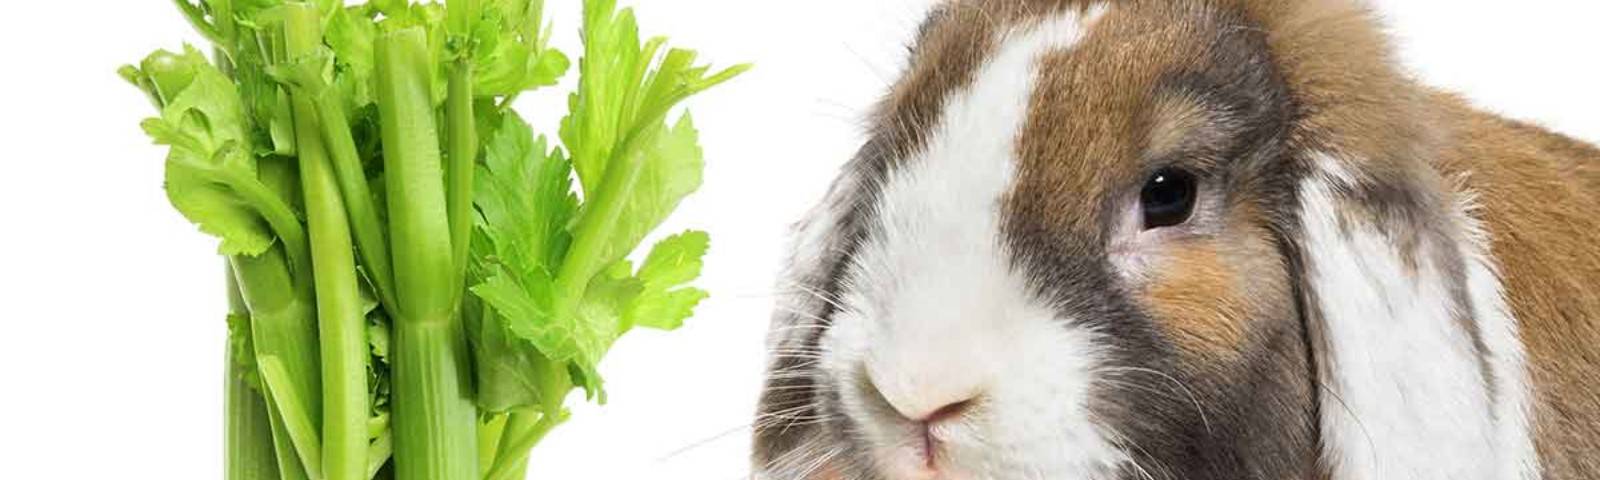 Можно ли сельдерей морским свинкам, собакам и хомякам, давать ли овощ кроликам и улиткам ахатинам, как оказать первую помощь животному, съевшему запрещенный продукт?